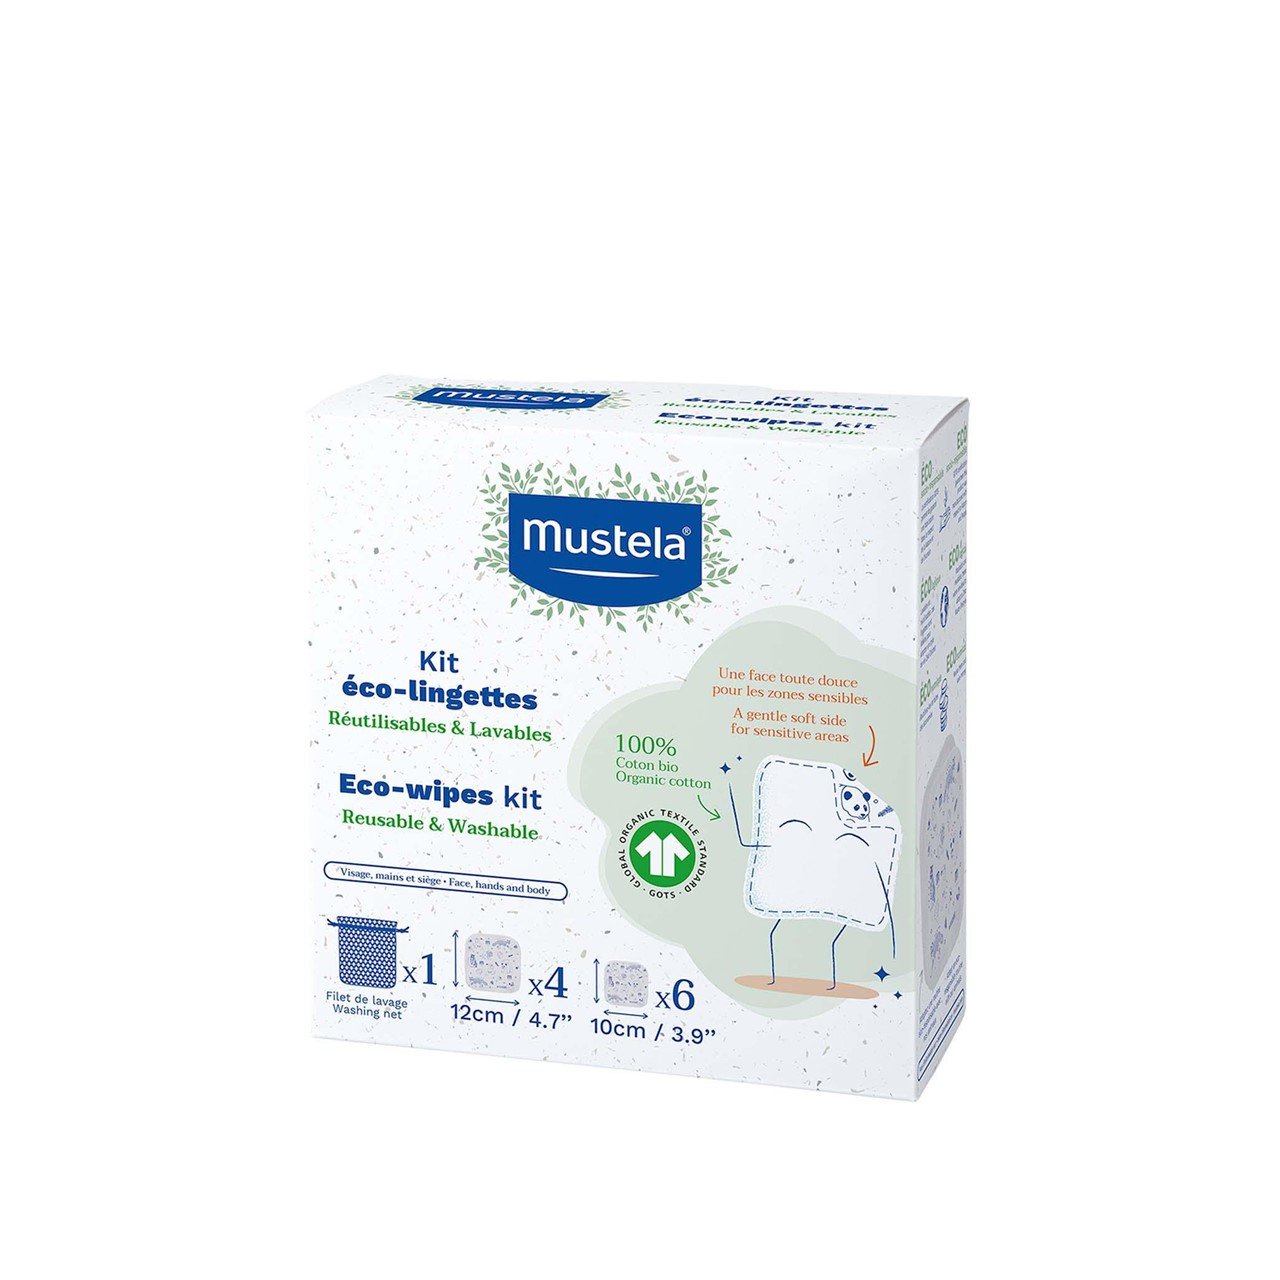 Mustela BIO 100% Cotton Eco-Wipes Kit x10